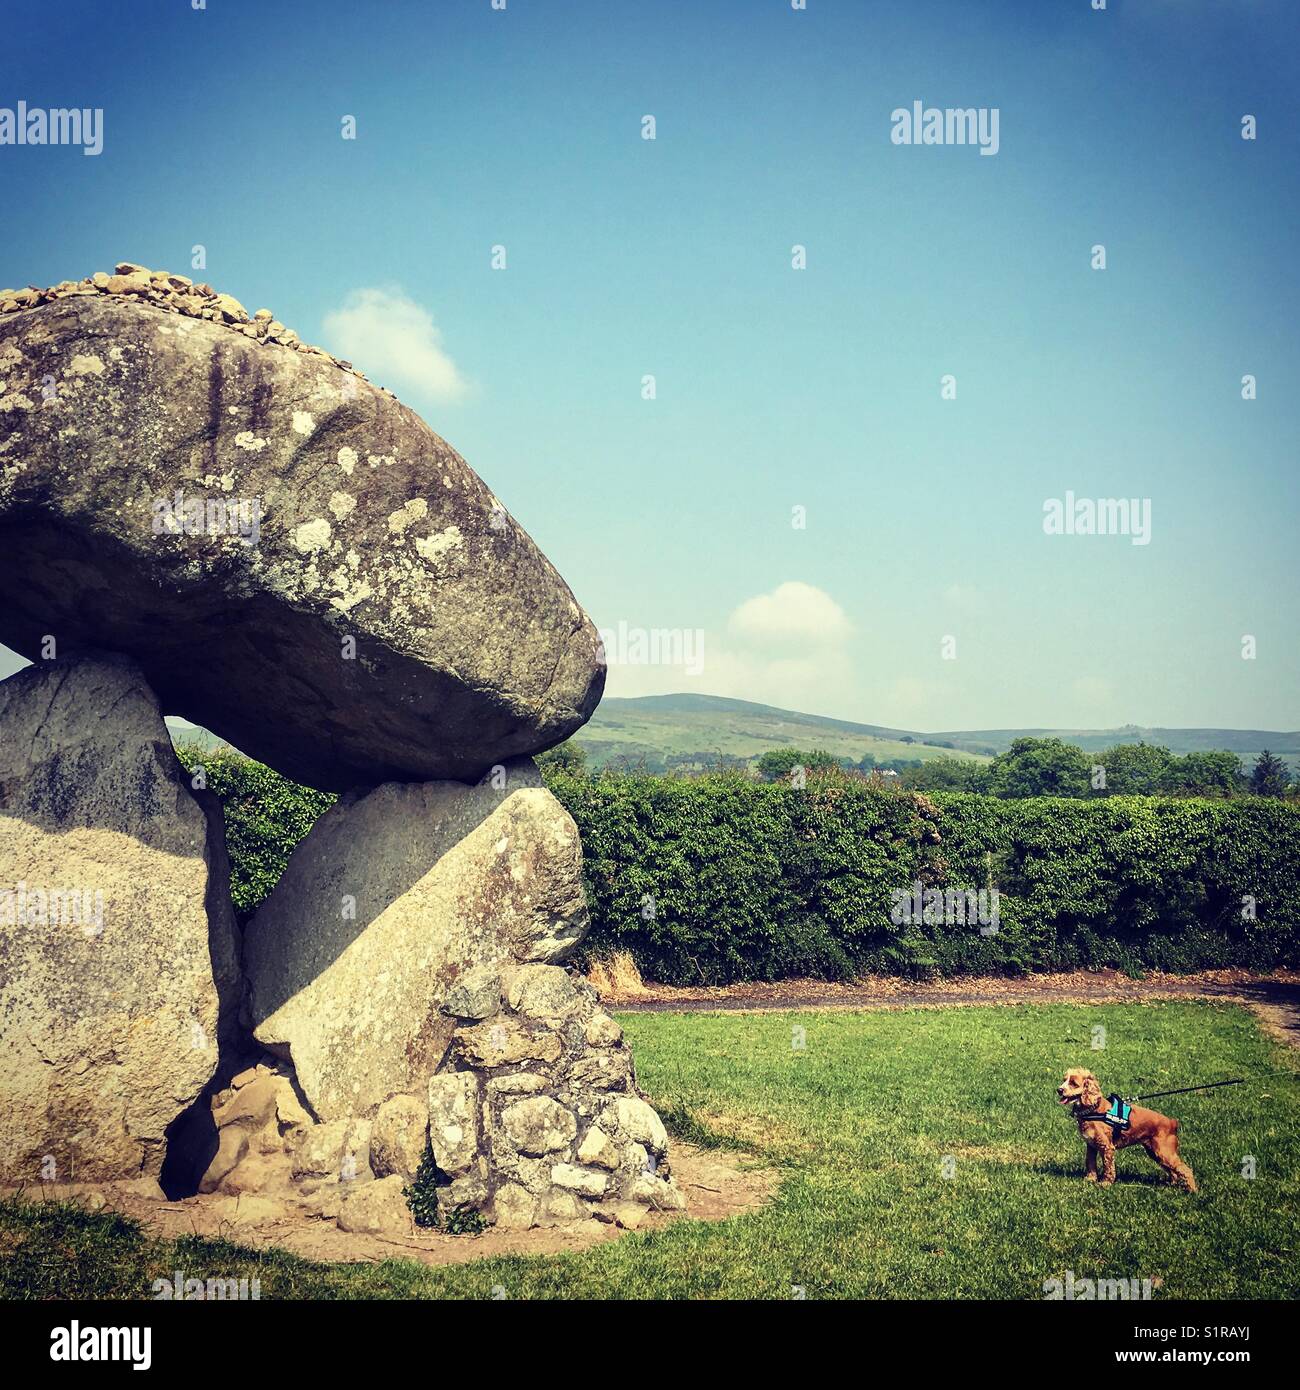 Piccolo Cane cercando extra minuscole rispetto al portale oggetto contrassegnato per la rimozione definitiva. l'proleek dolmen. Foto Stock